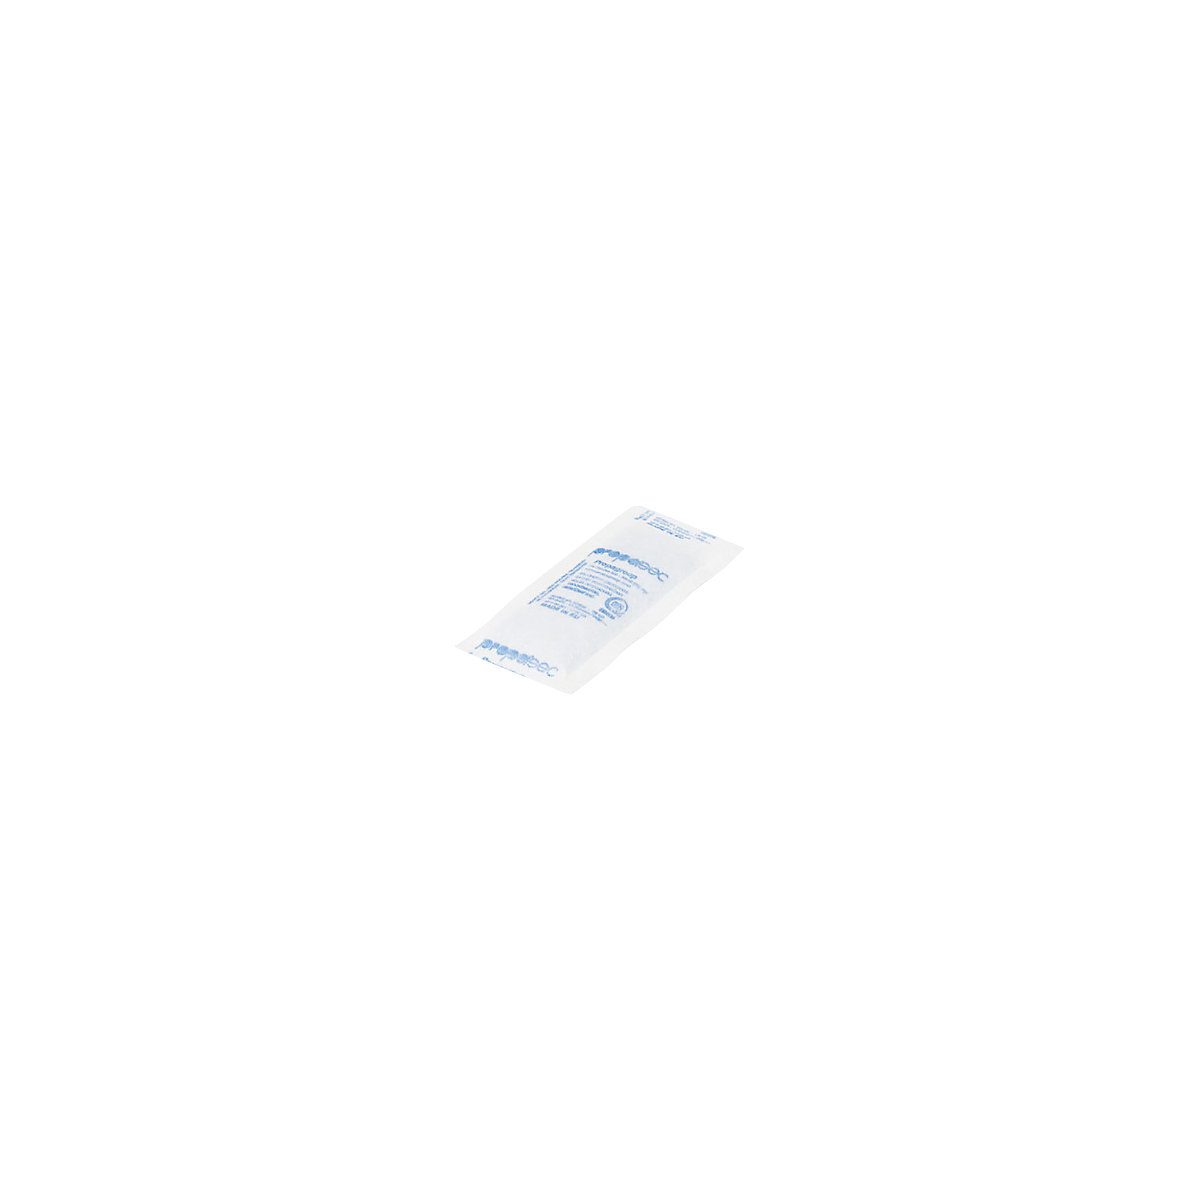 Sacchetti disidratanti, bianco, lungh. x largh. x alt. 85 x 40 x 8 mm, conf. da 1200 pz., a partire da 10 conf.-1